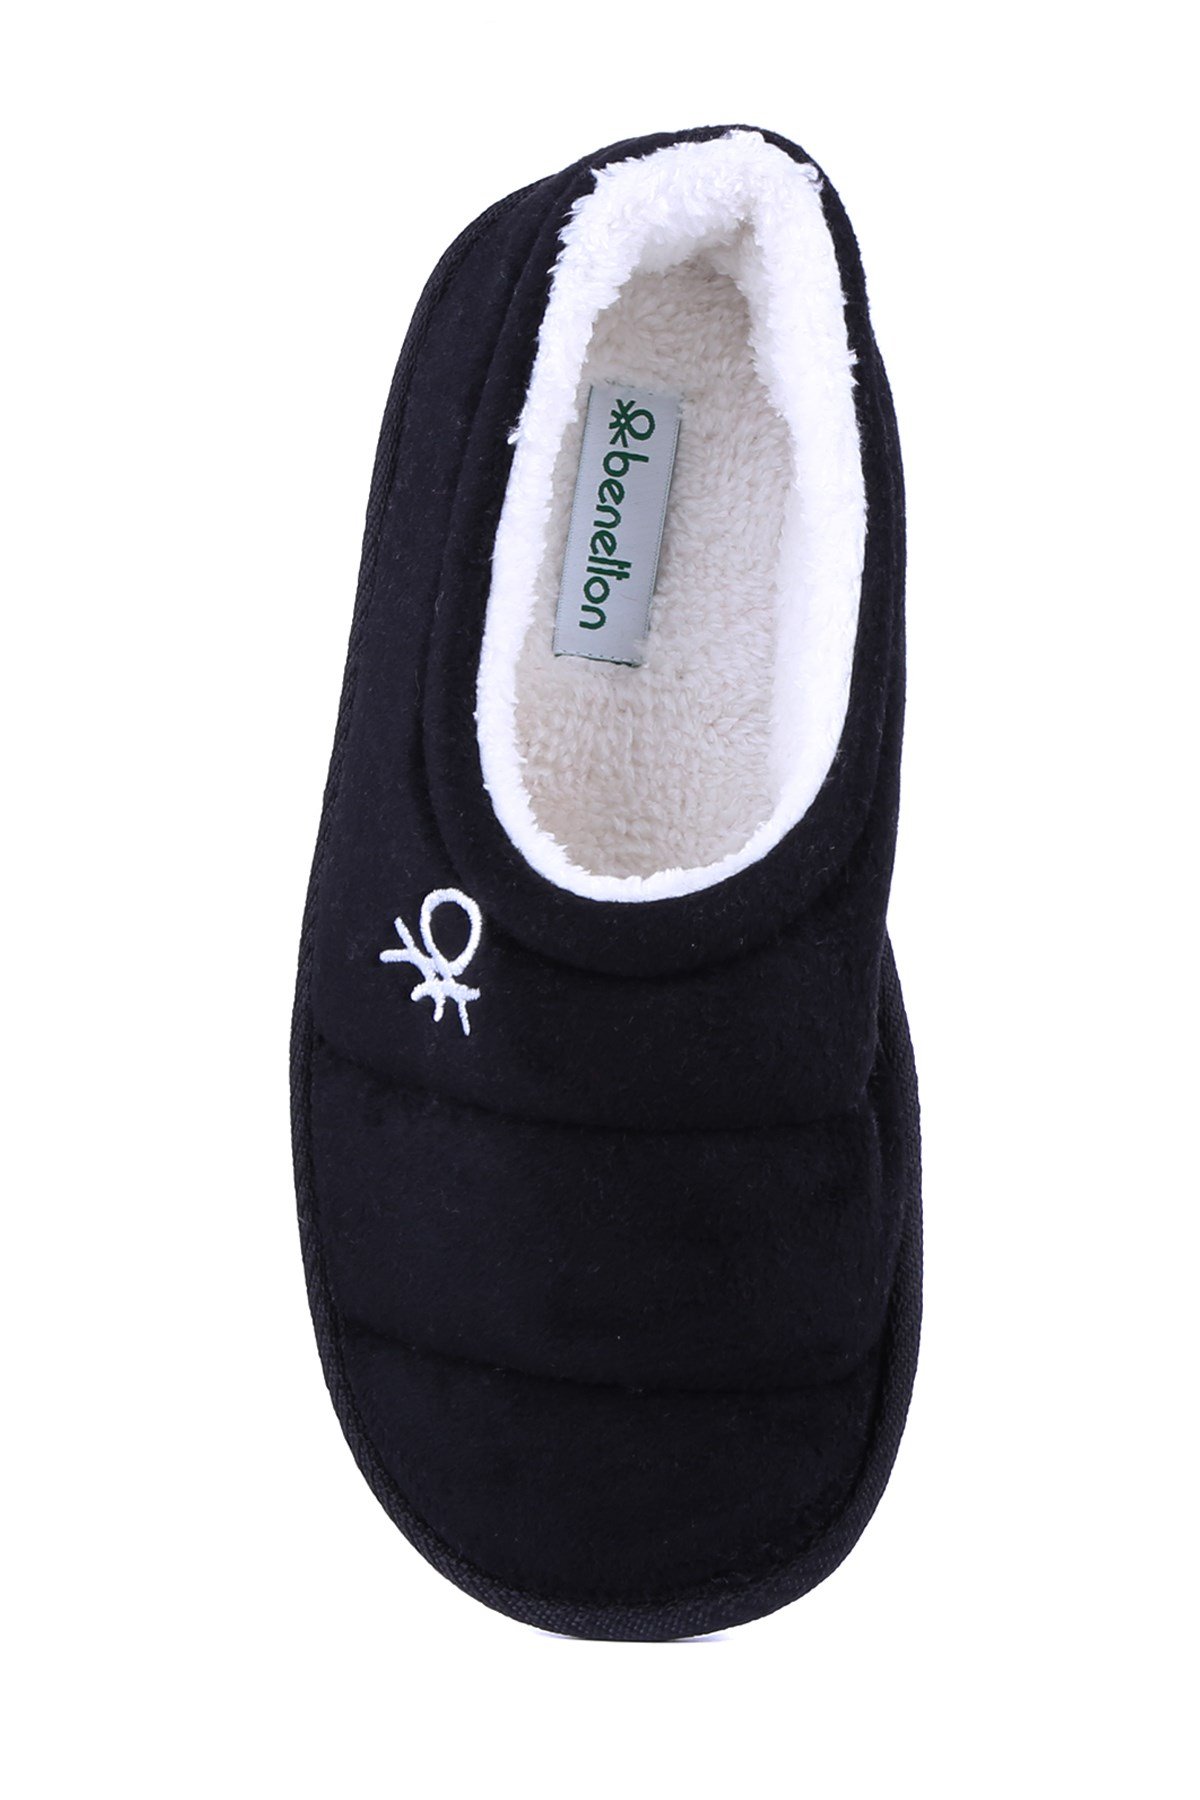 Benetton - Siyah Renk Kadın Panduf Ev Ayakkabısı1165 - M.K.06.22K.00003|988